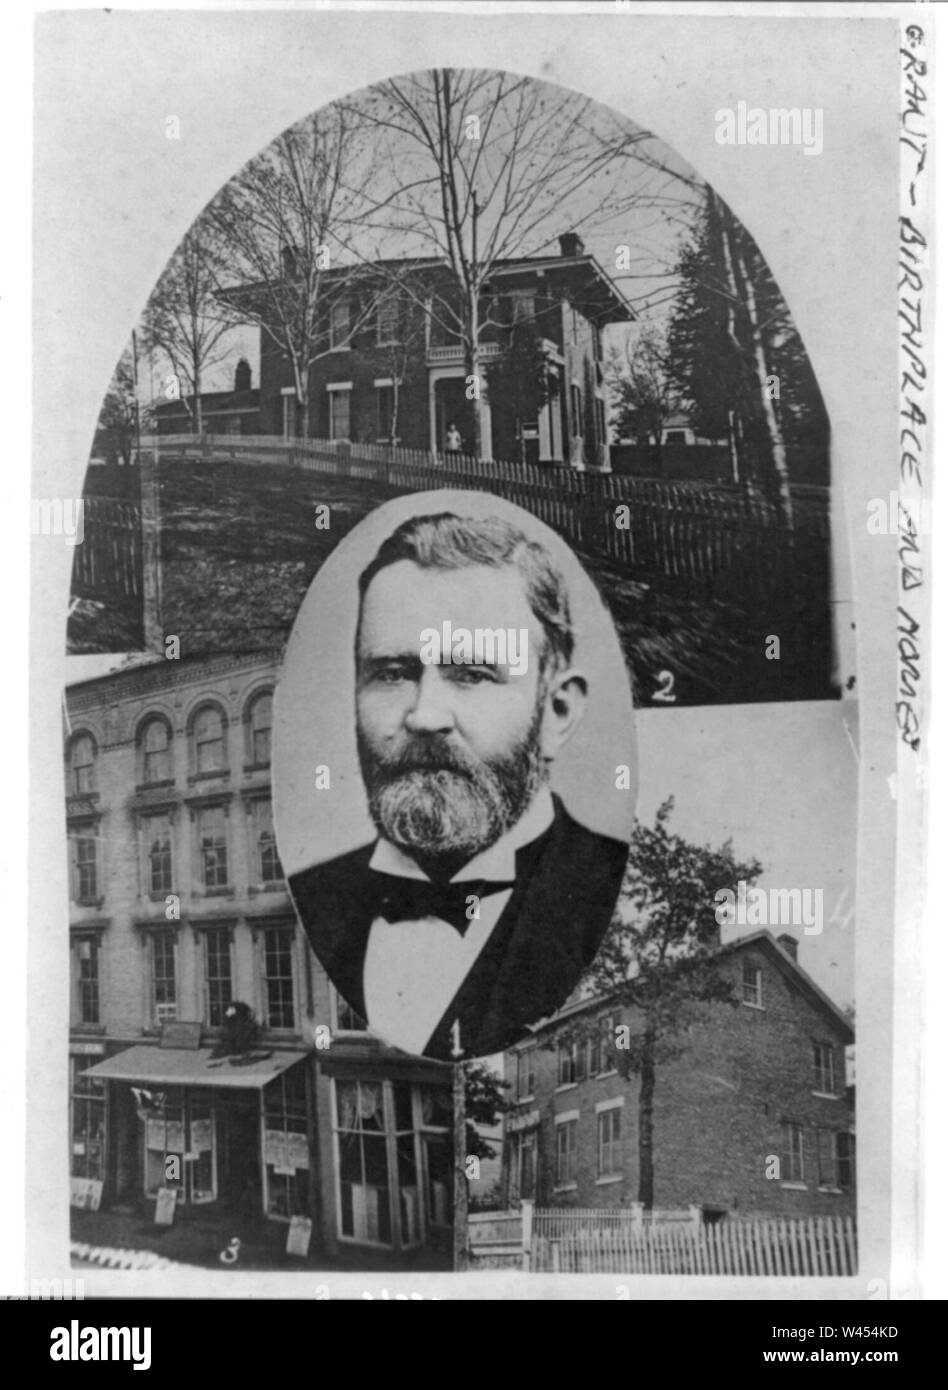 Composé de 4 photos- 1. Gen'l'accorder ; 2. Nouvelle résidence ; 3. Grant's store ; 4. Ancienne résidence. Galena, Illinois, 1860 Banque D'Images